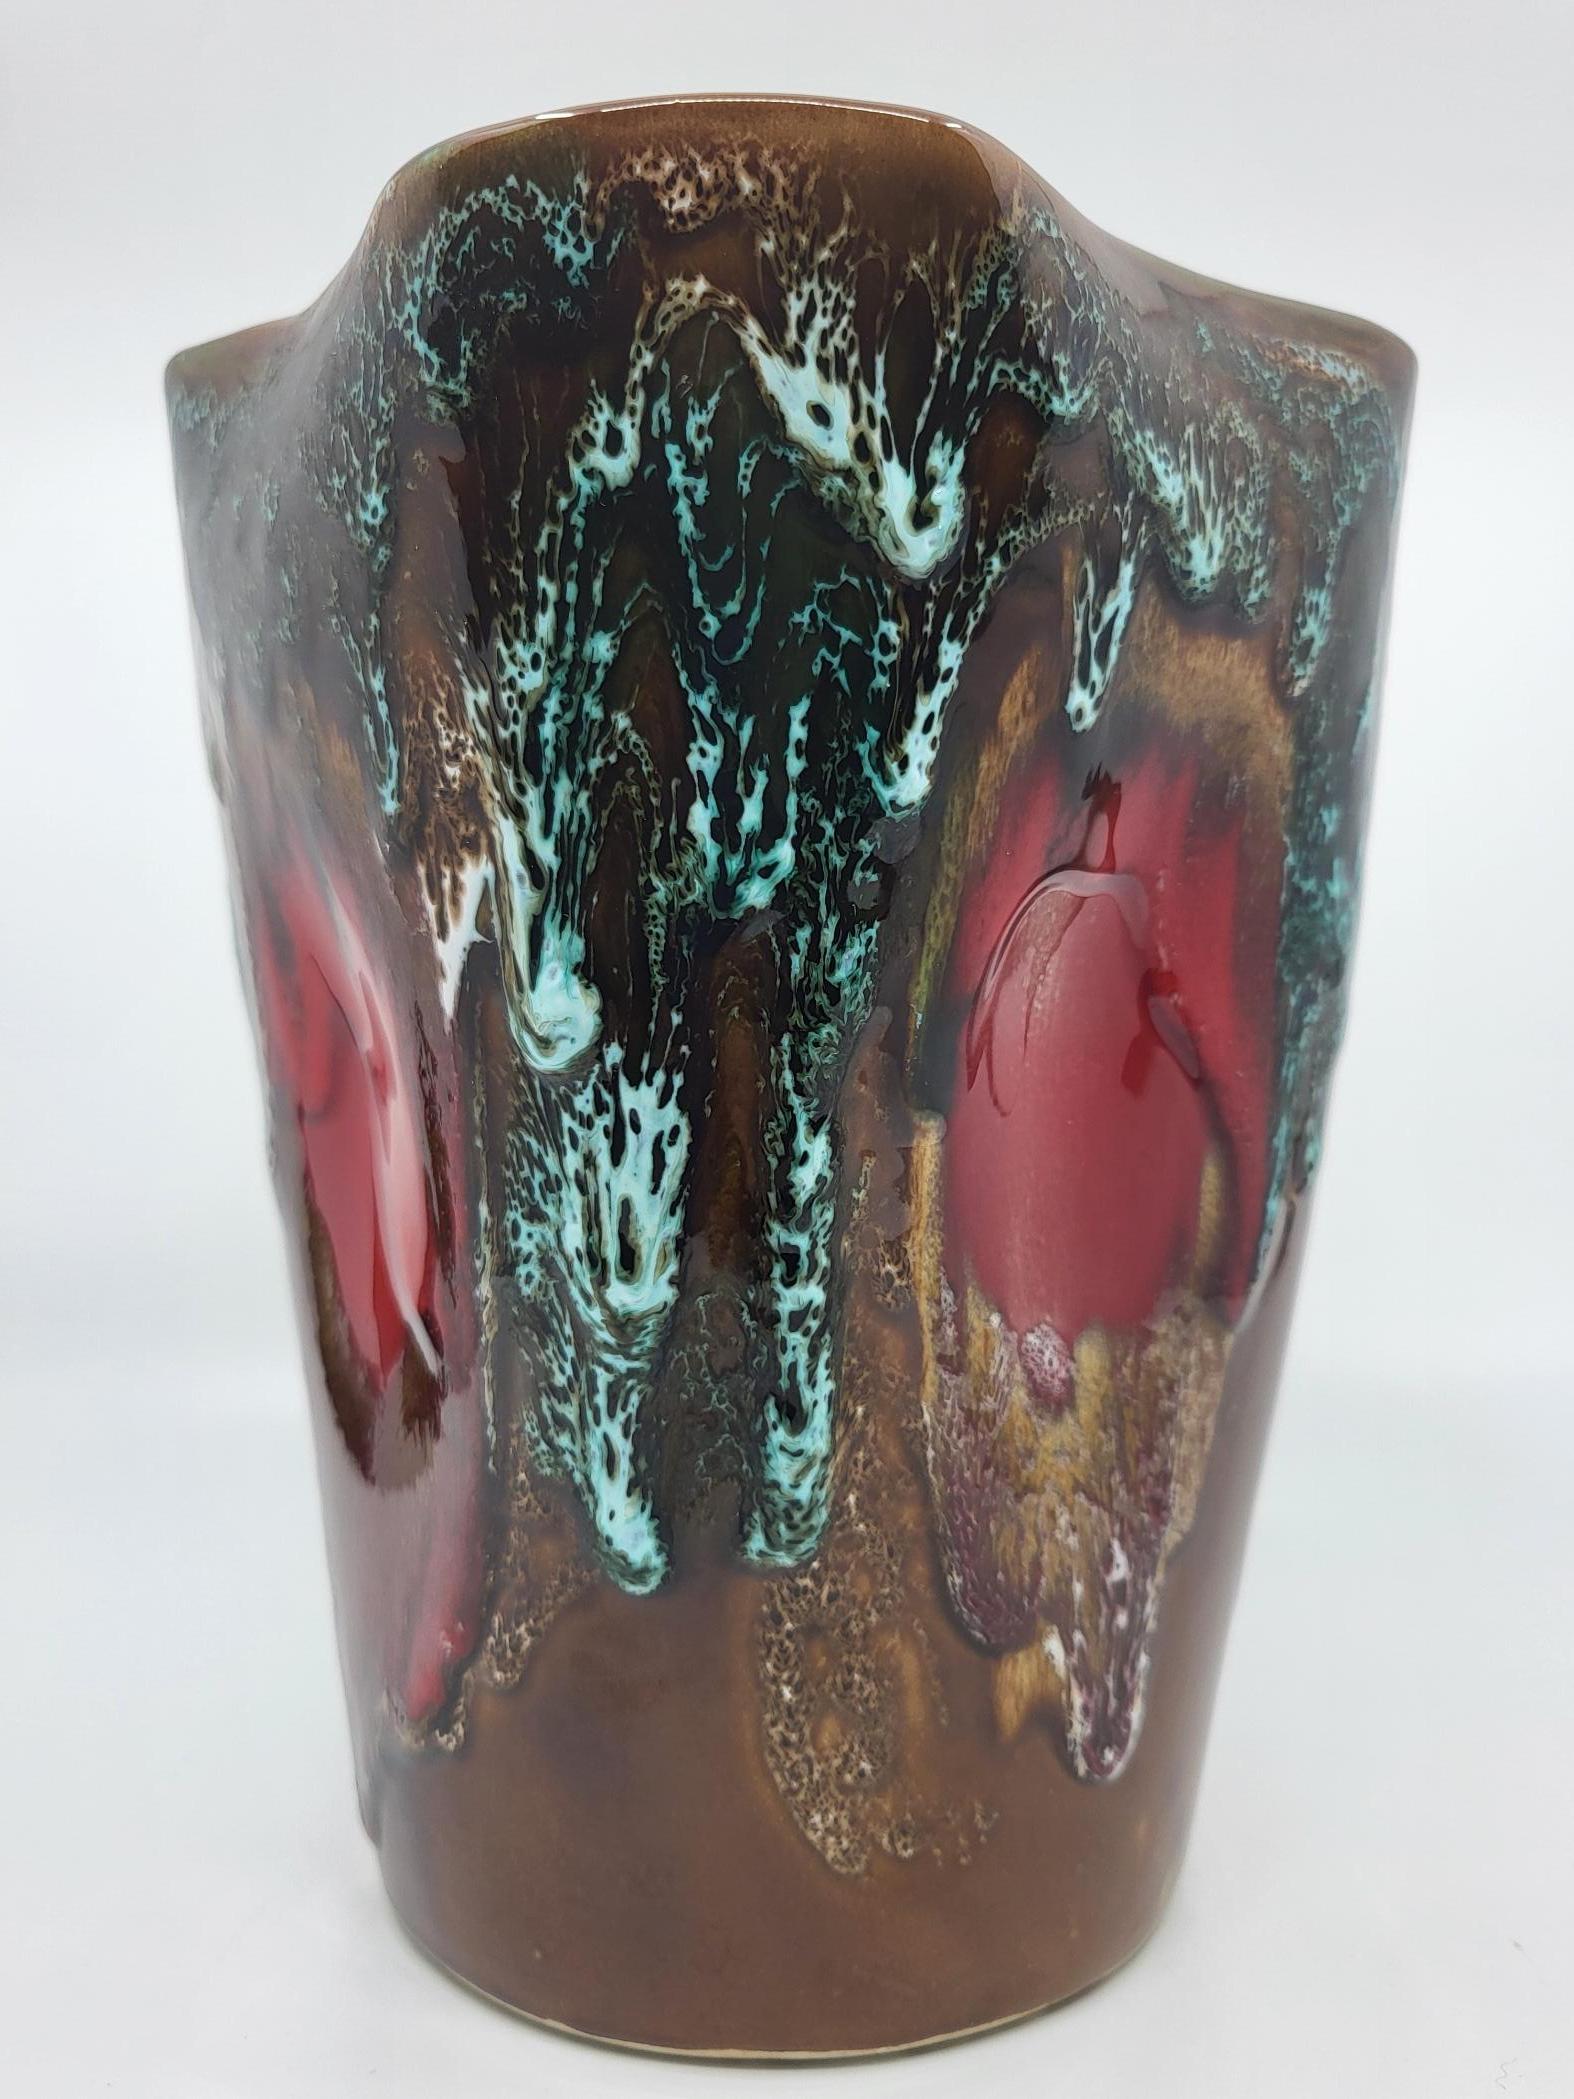 Vase Vallauris avec les couleurs dominantes, marron, bleu et rouge en forme de trèfle à 4 feuilles. Subtil mélange d'émaux colorés qui ont gardés toute leur brillance. Fait à la main .
Il fut crée à 